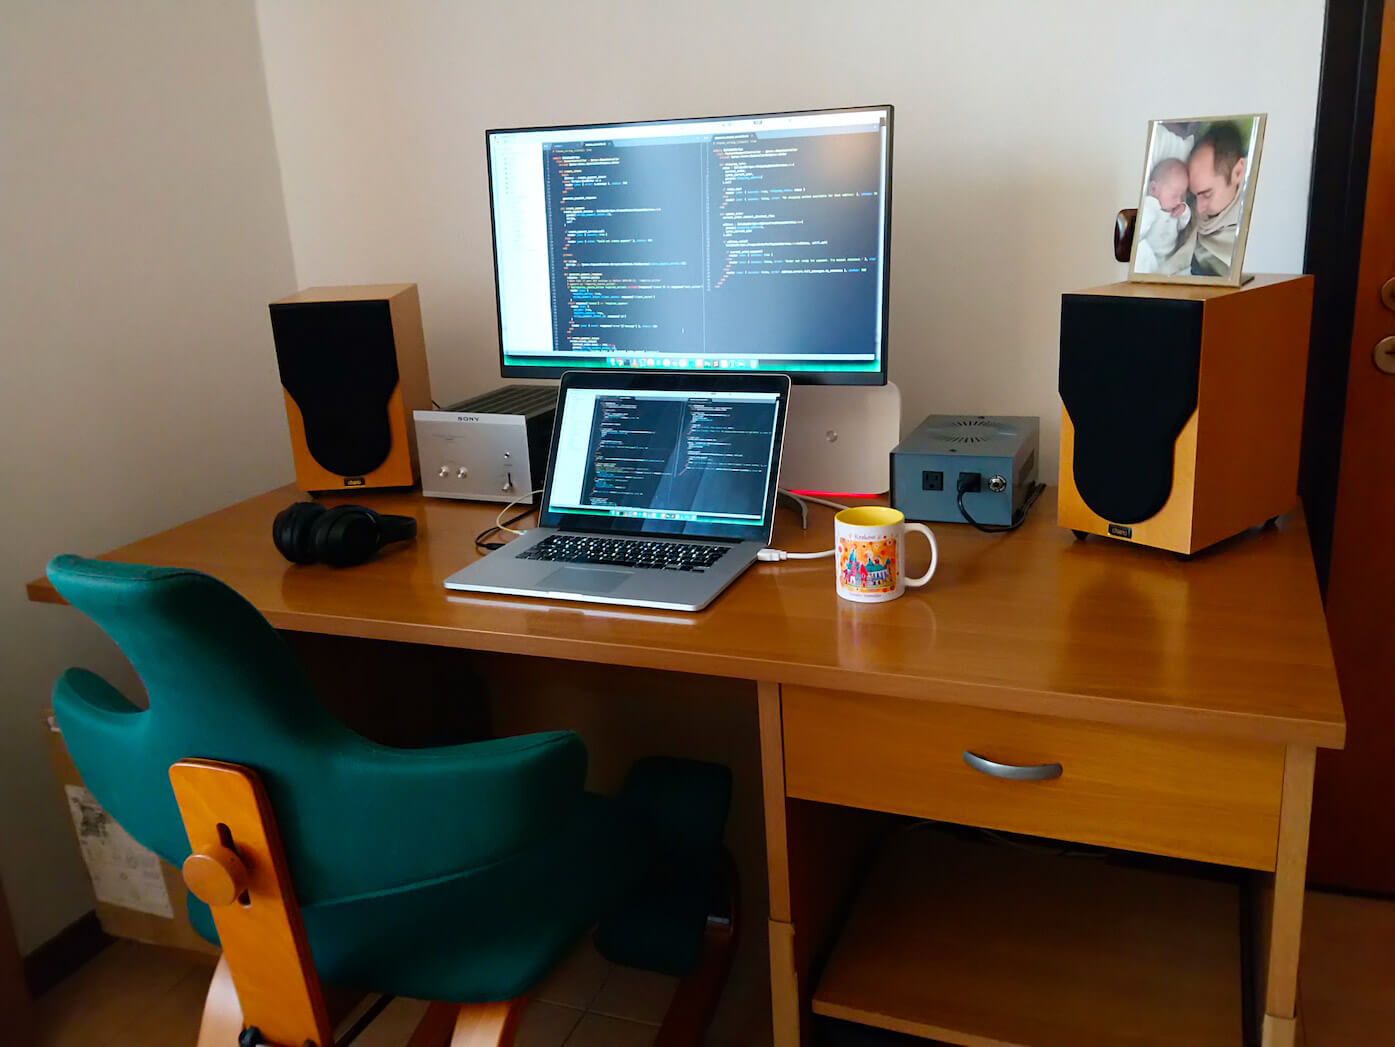 Andrea Longhi's home office setup